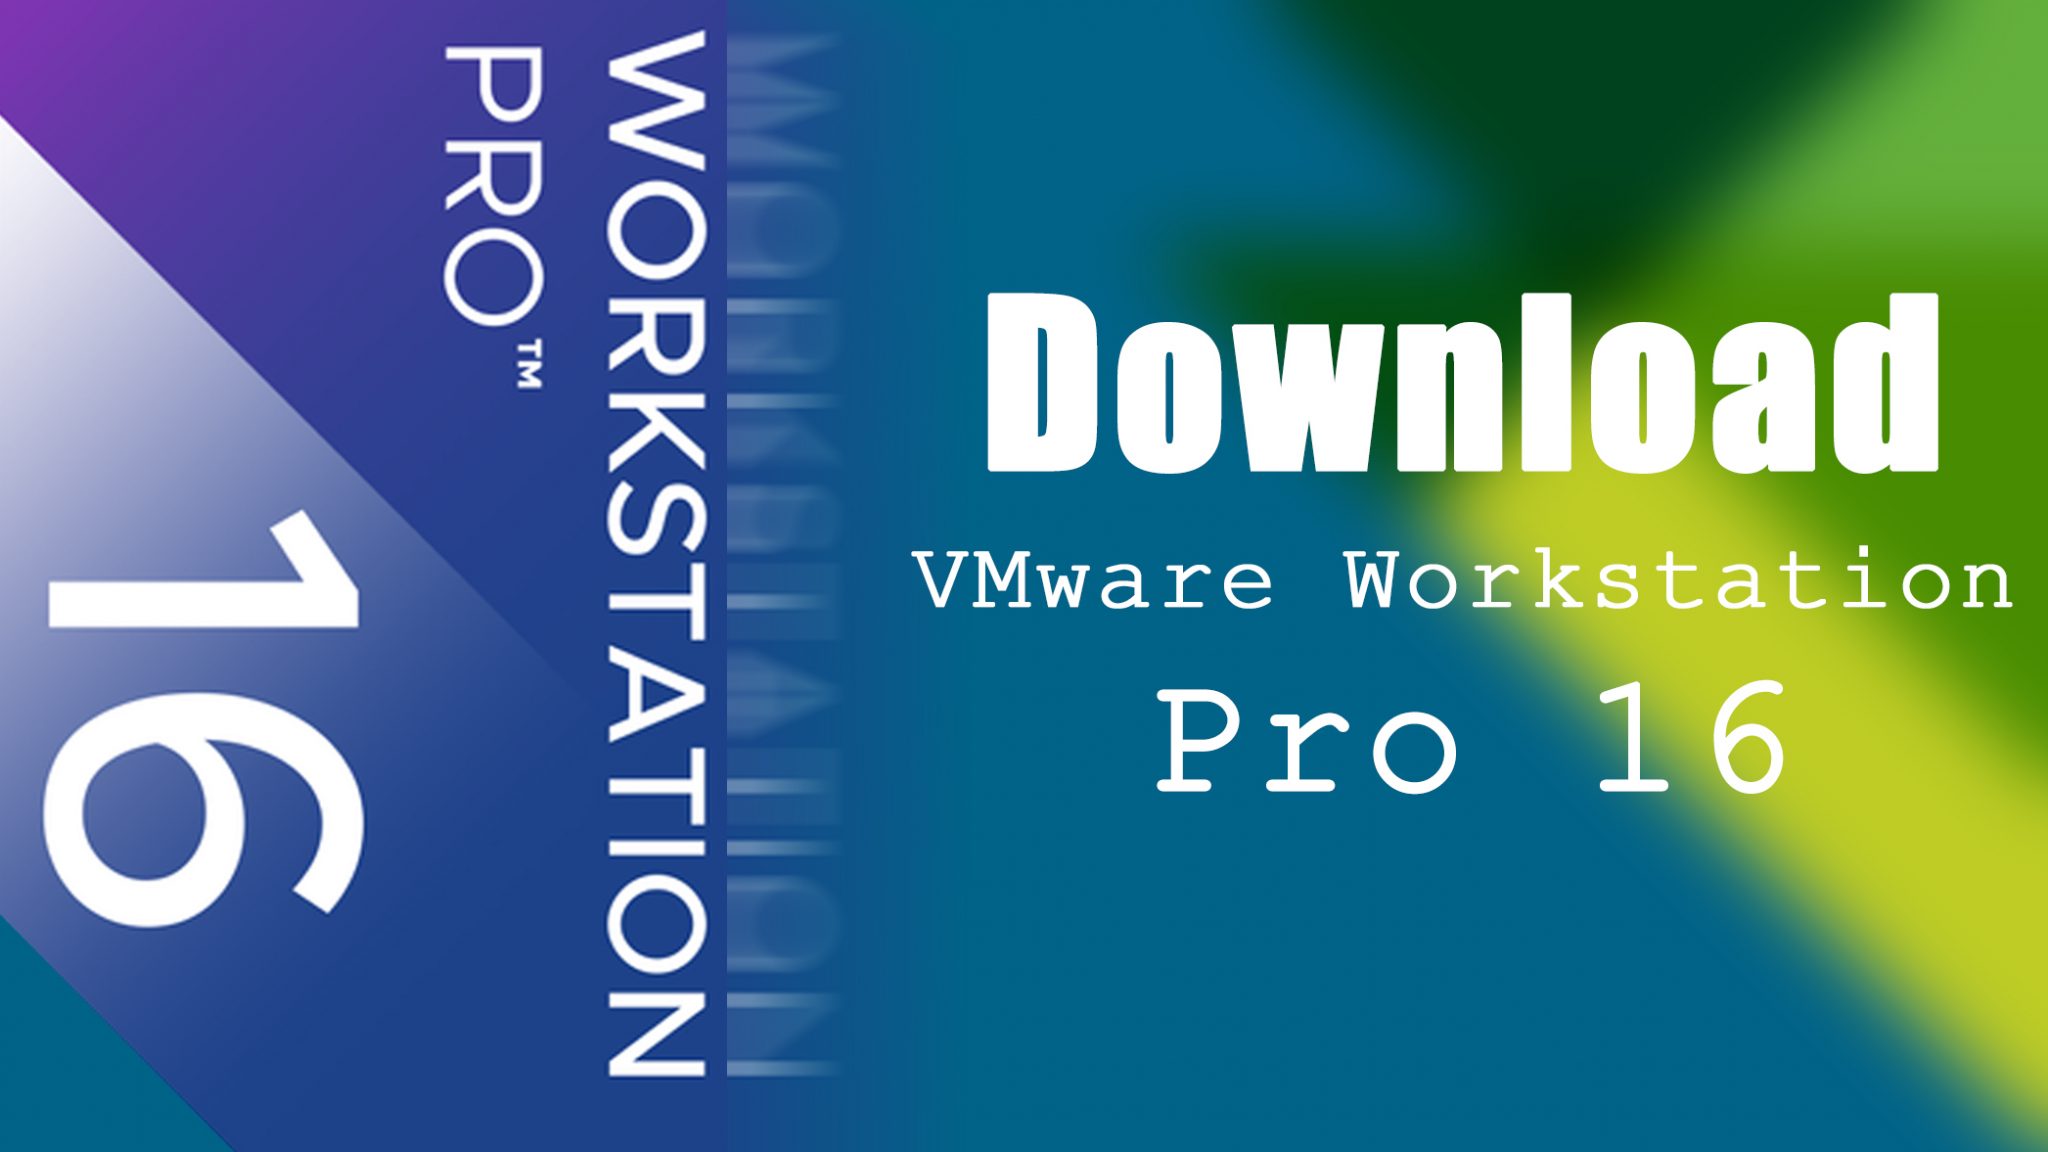 vmware workstation download free version